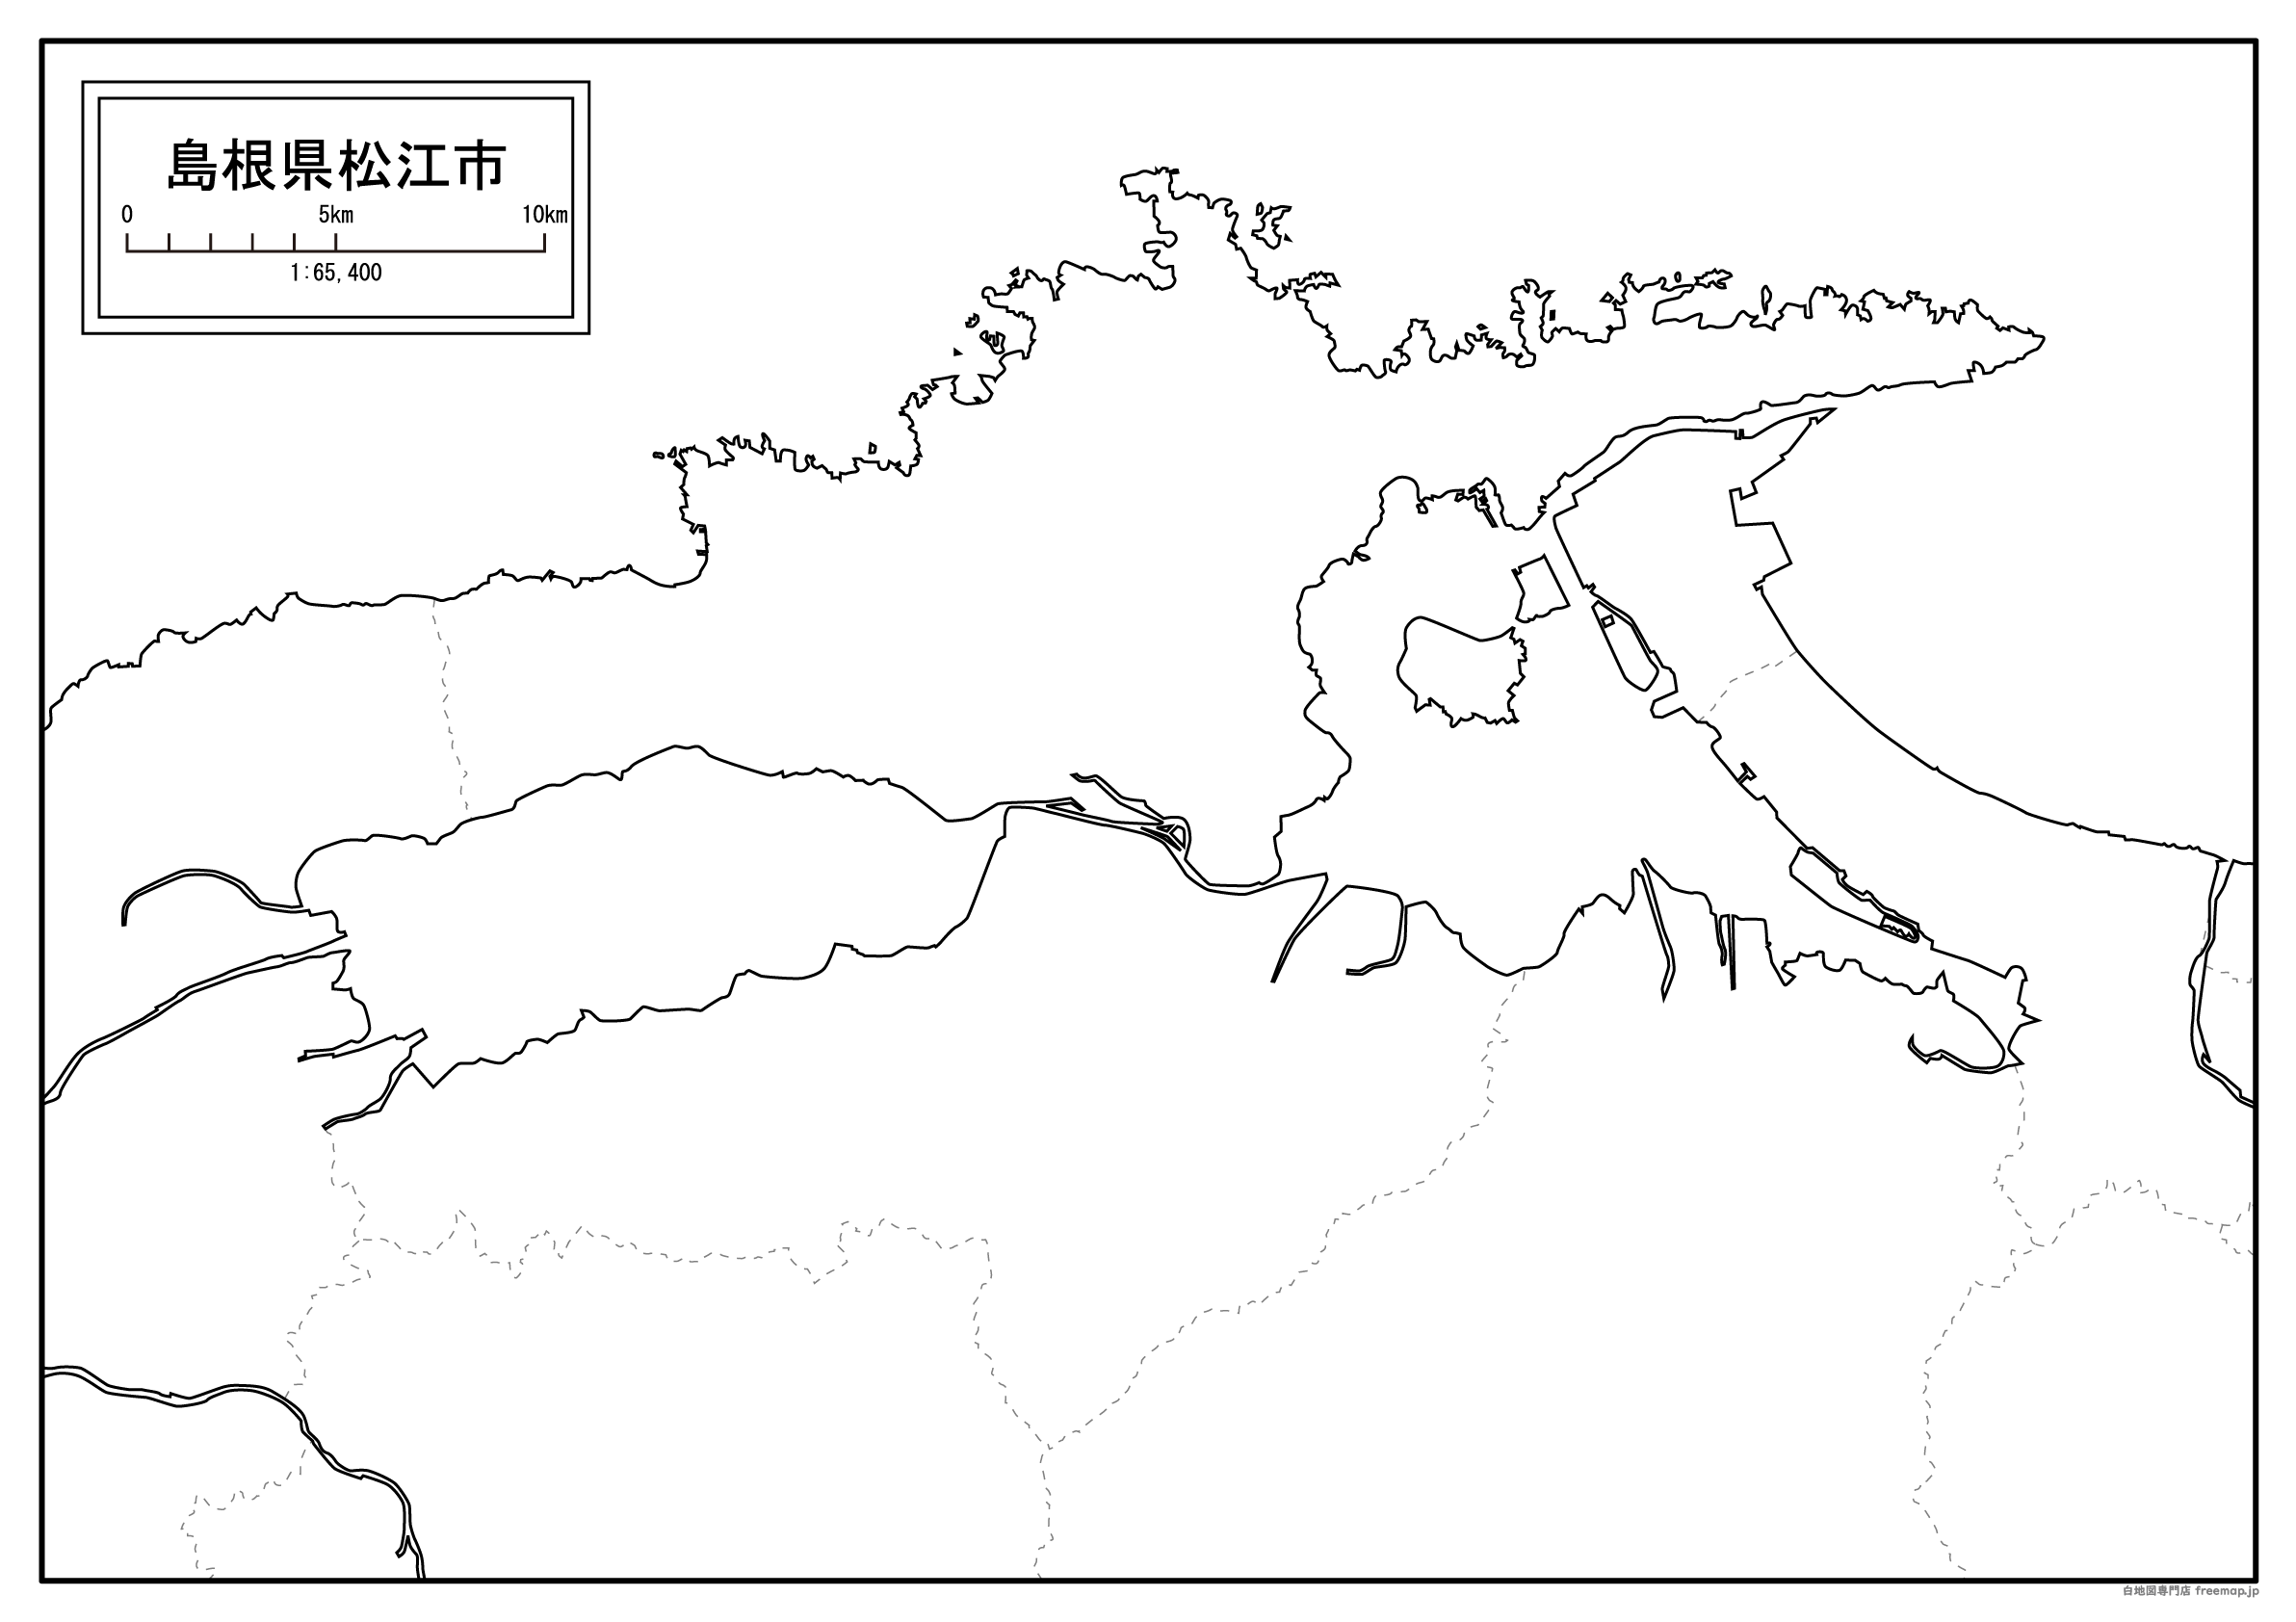 松江市のサムネイル